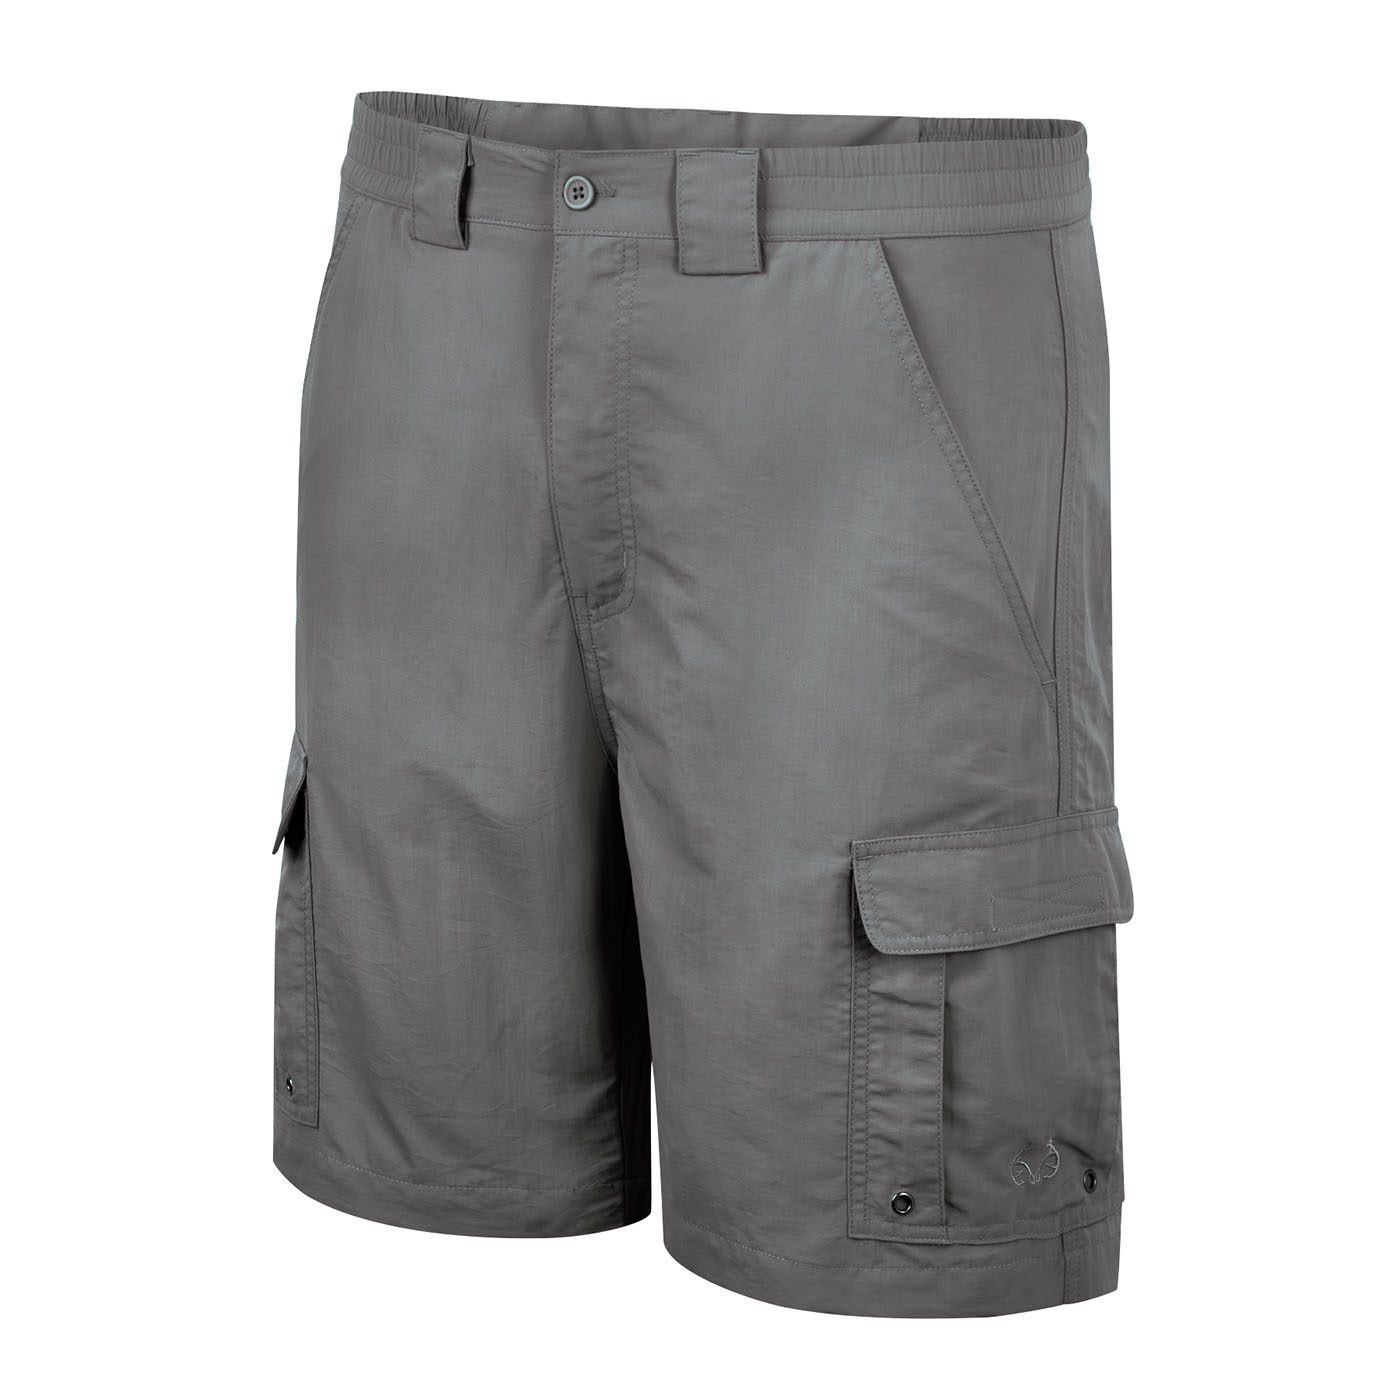 Realtree Cargo Shorts for Men - Poshmark